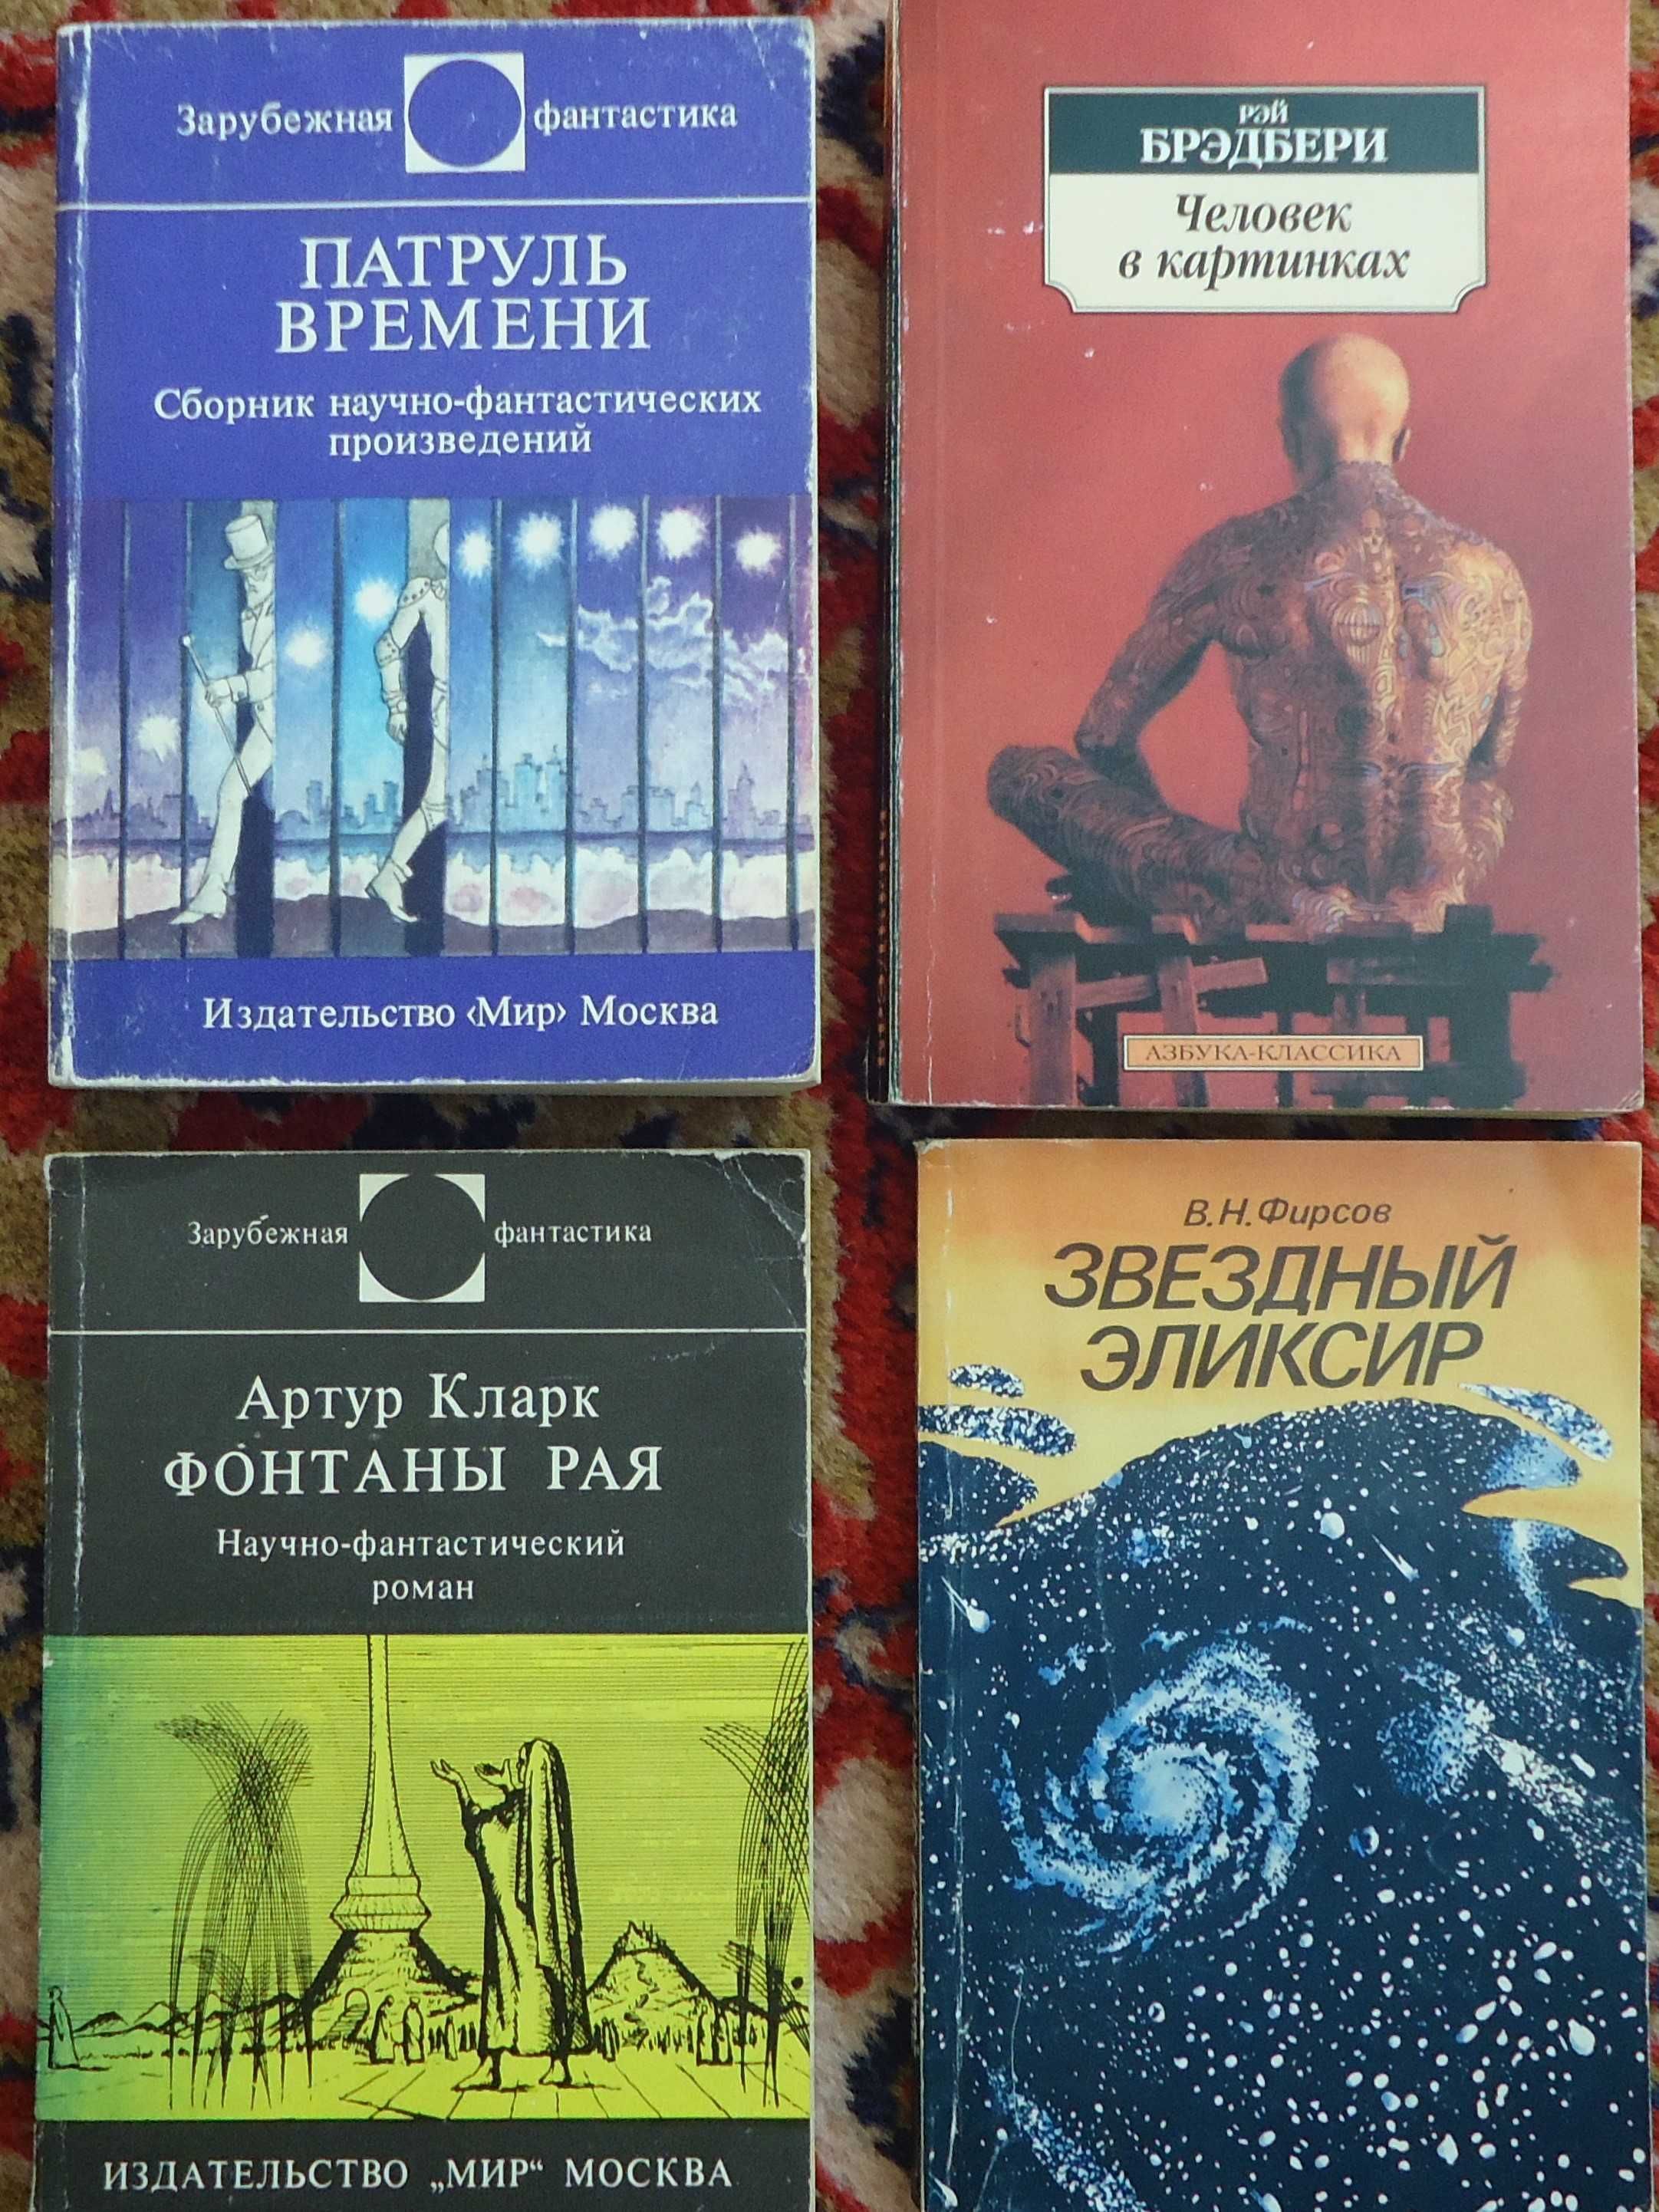 Книги - 44 броя - фантастика на руски език